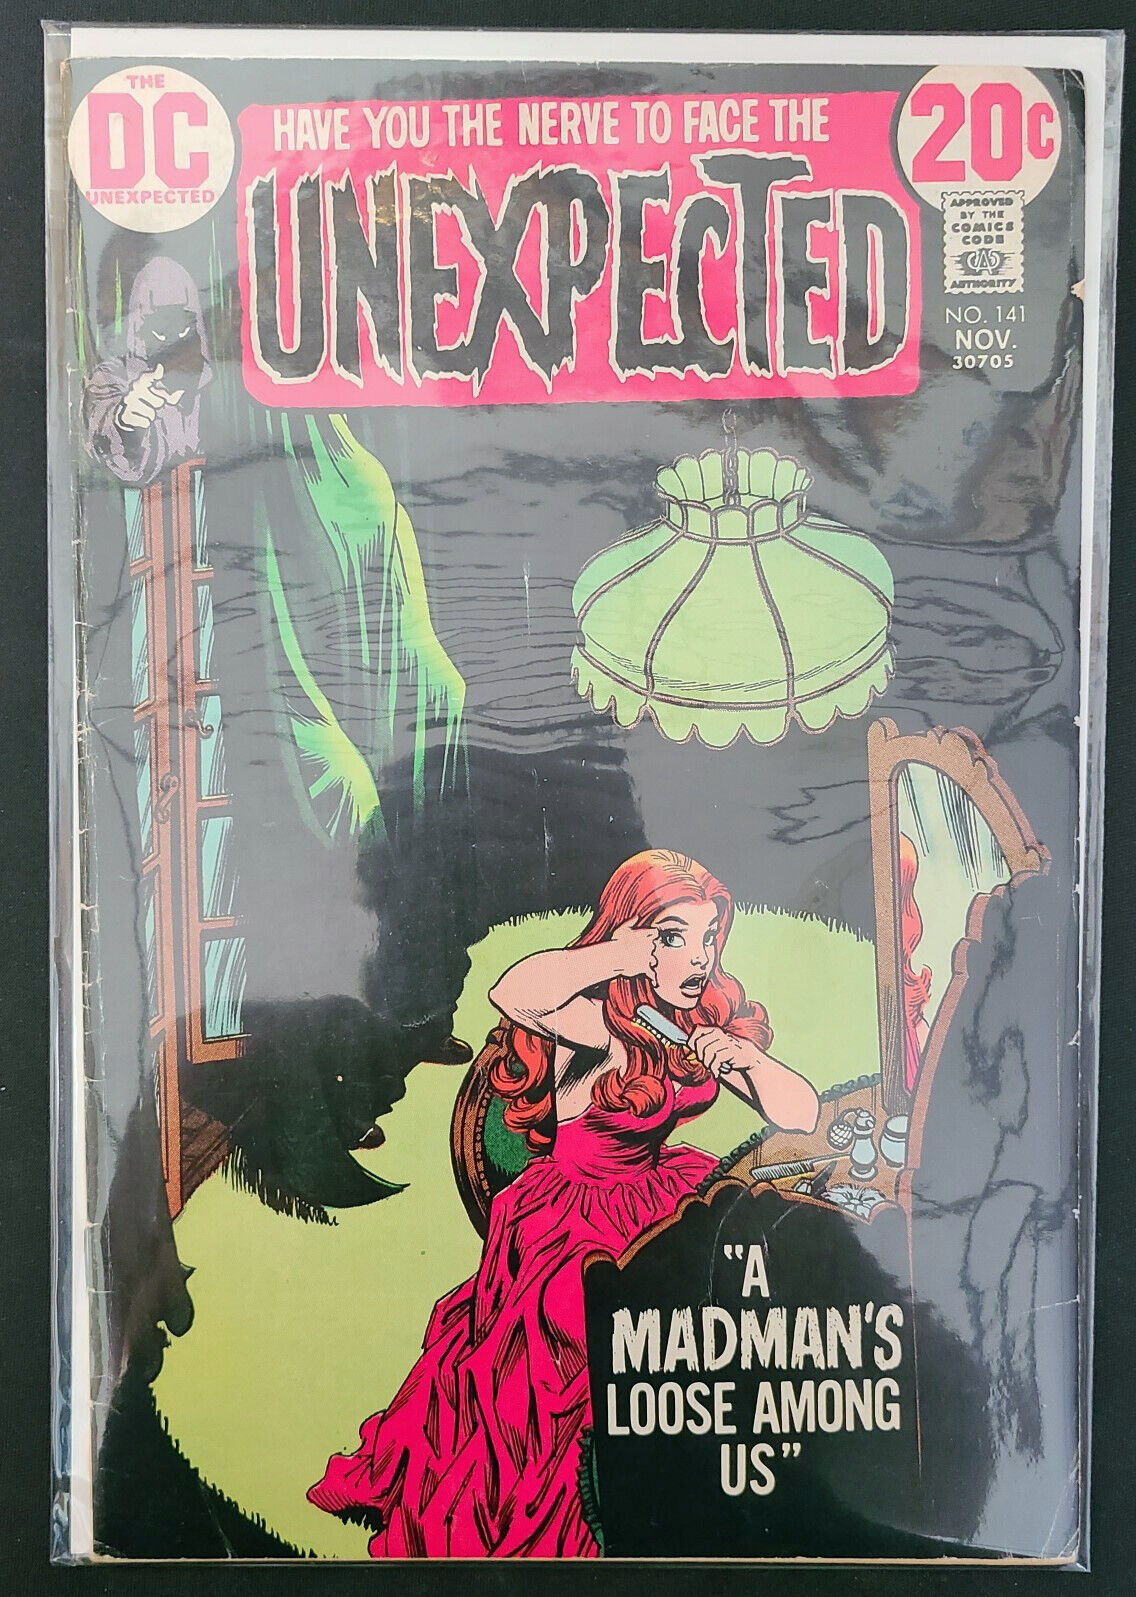 THE UNEXPECTED Vol. 17 # 141 November 1972 (DC Comics) 🍒